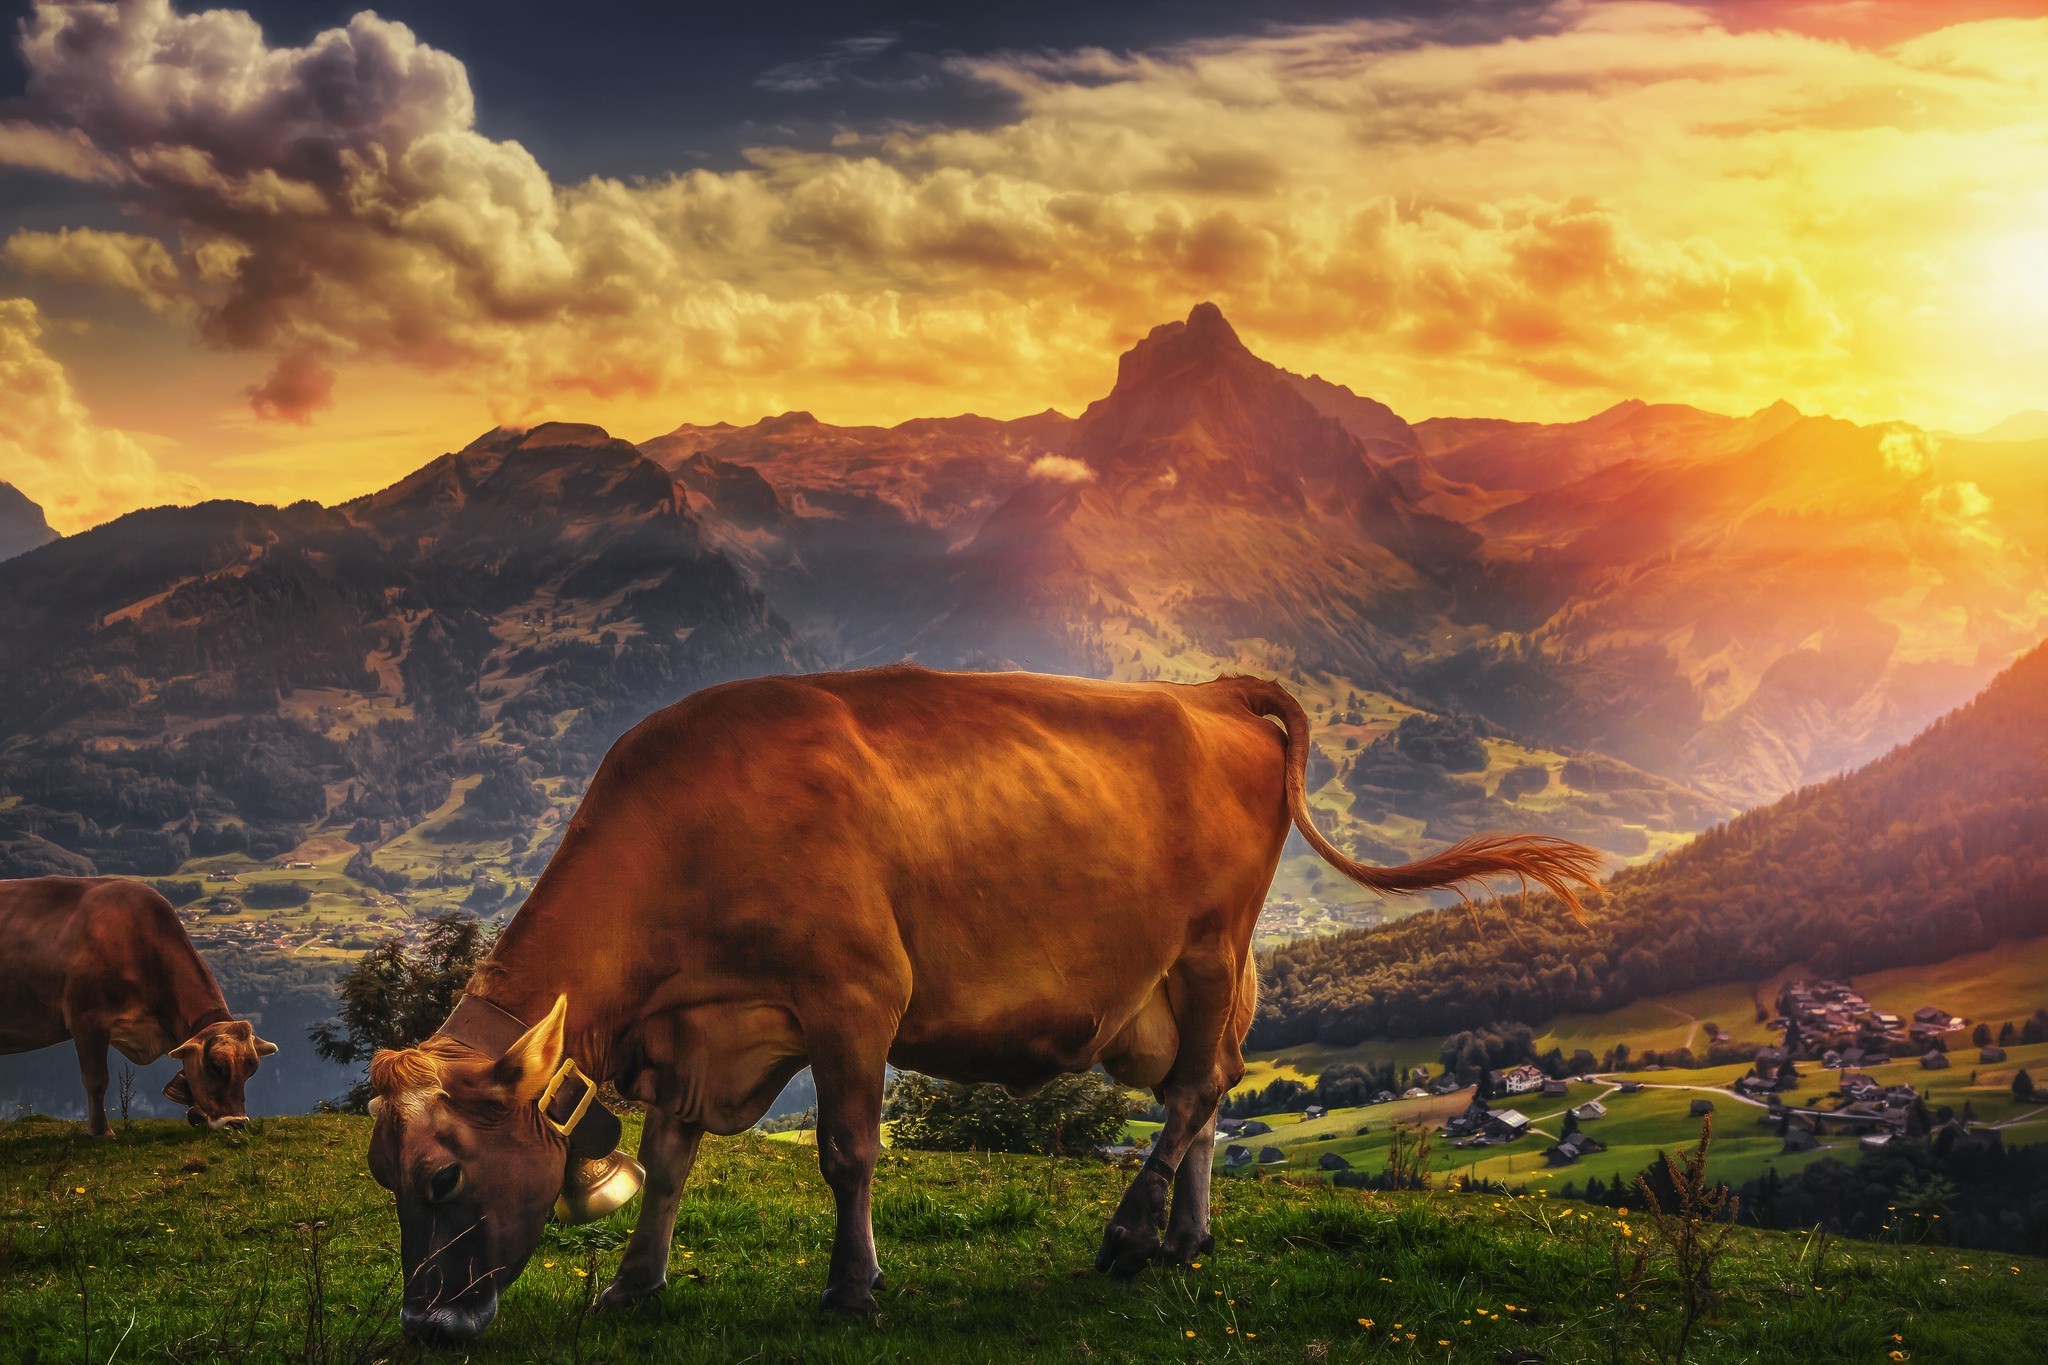 Коровы на закате